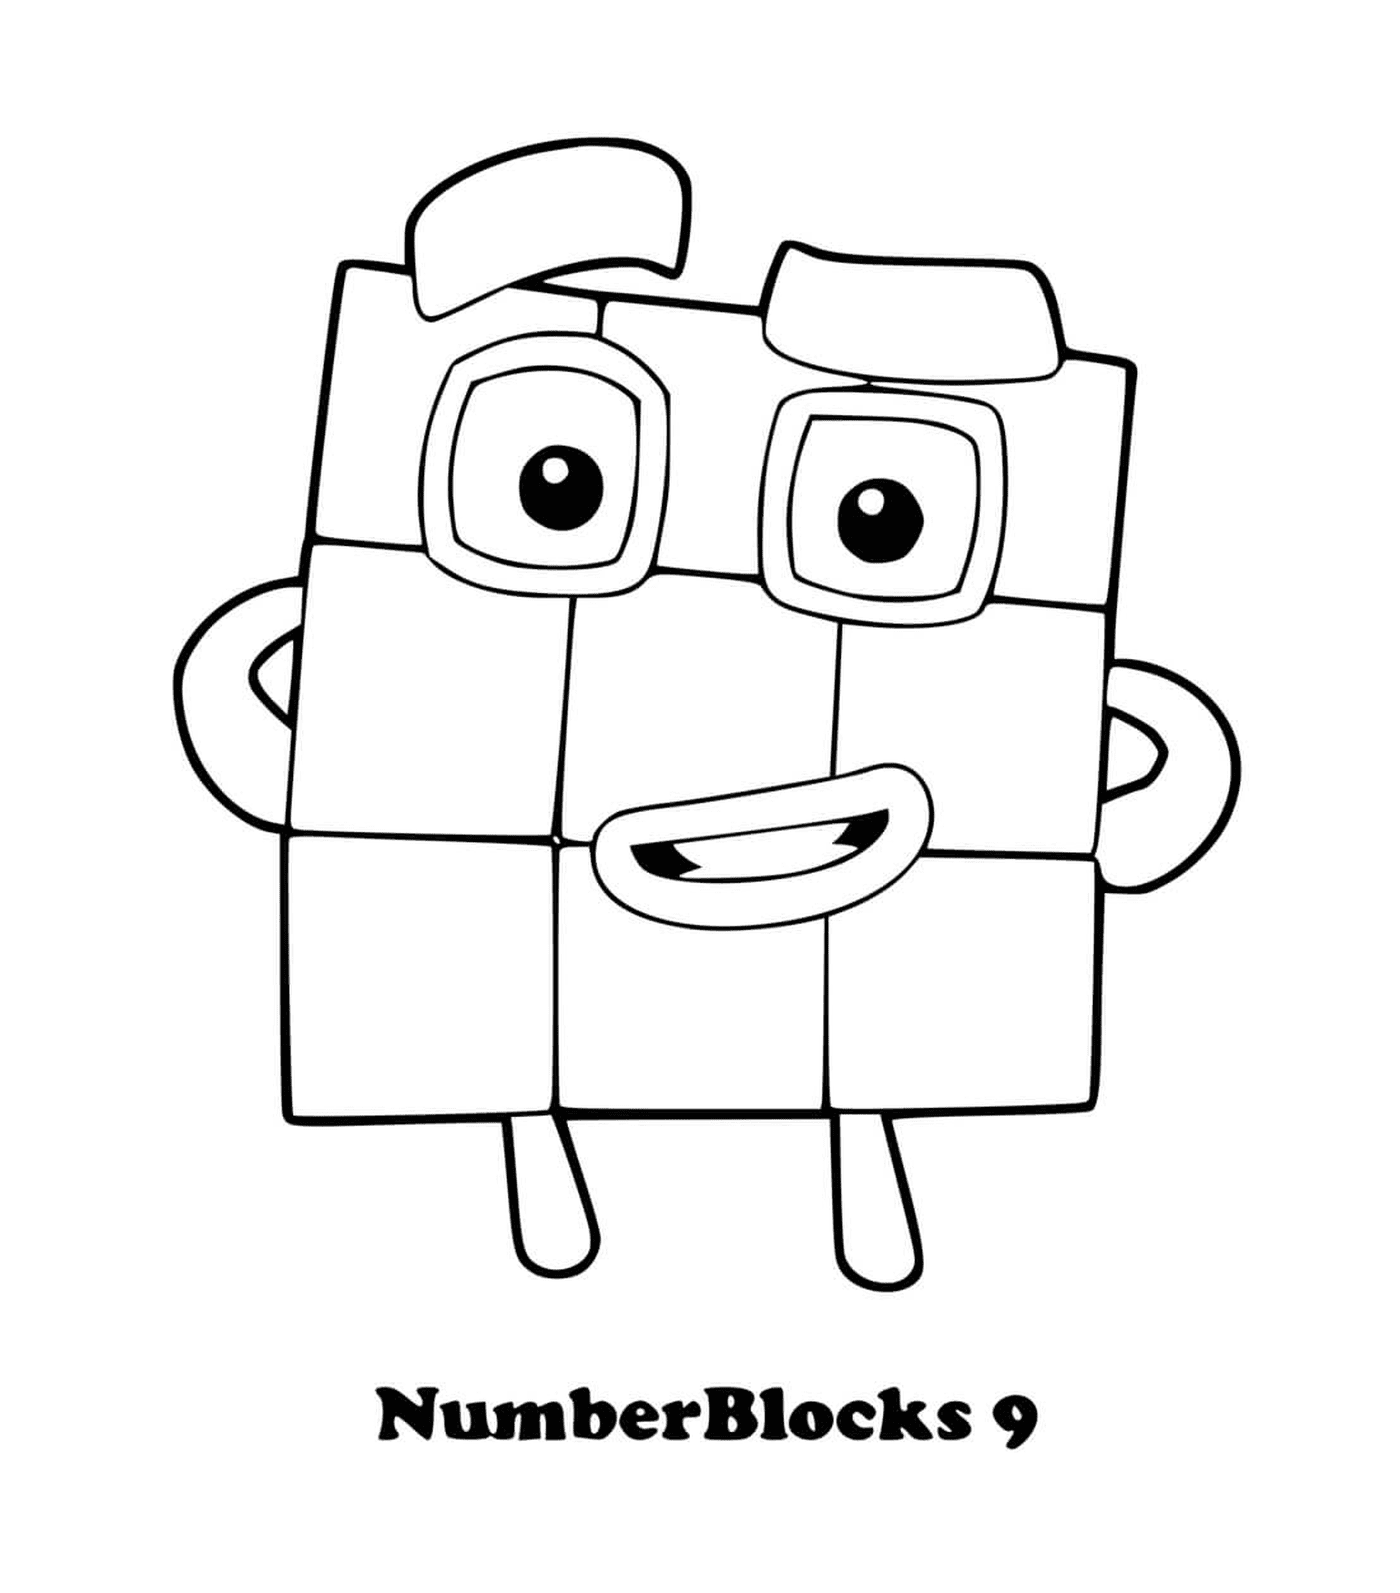  9号区块 9号,一个有眼睛的方形 